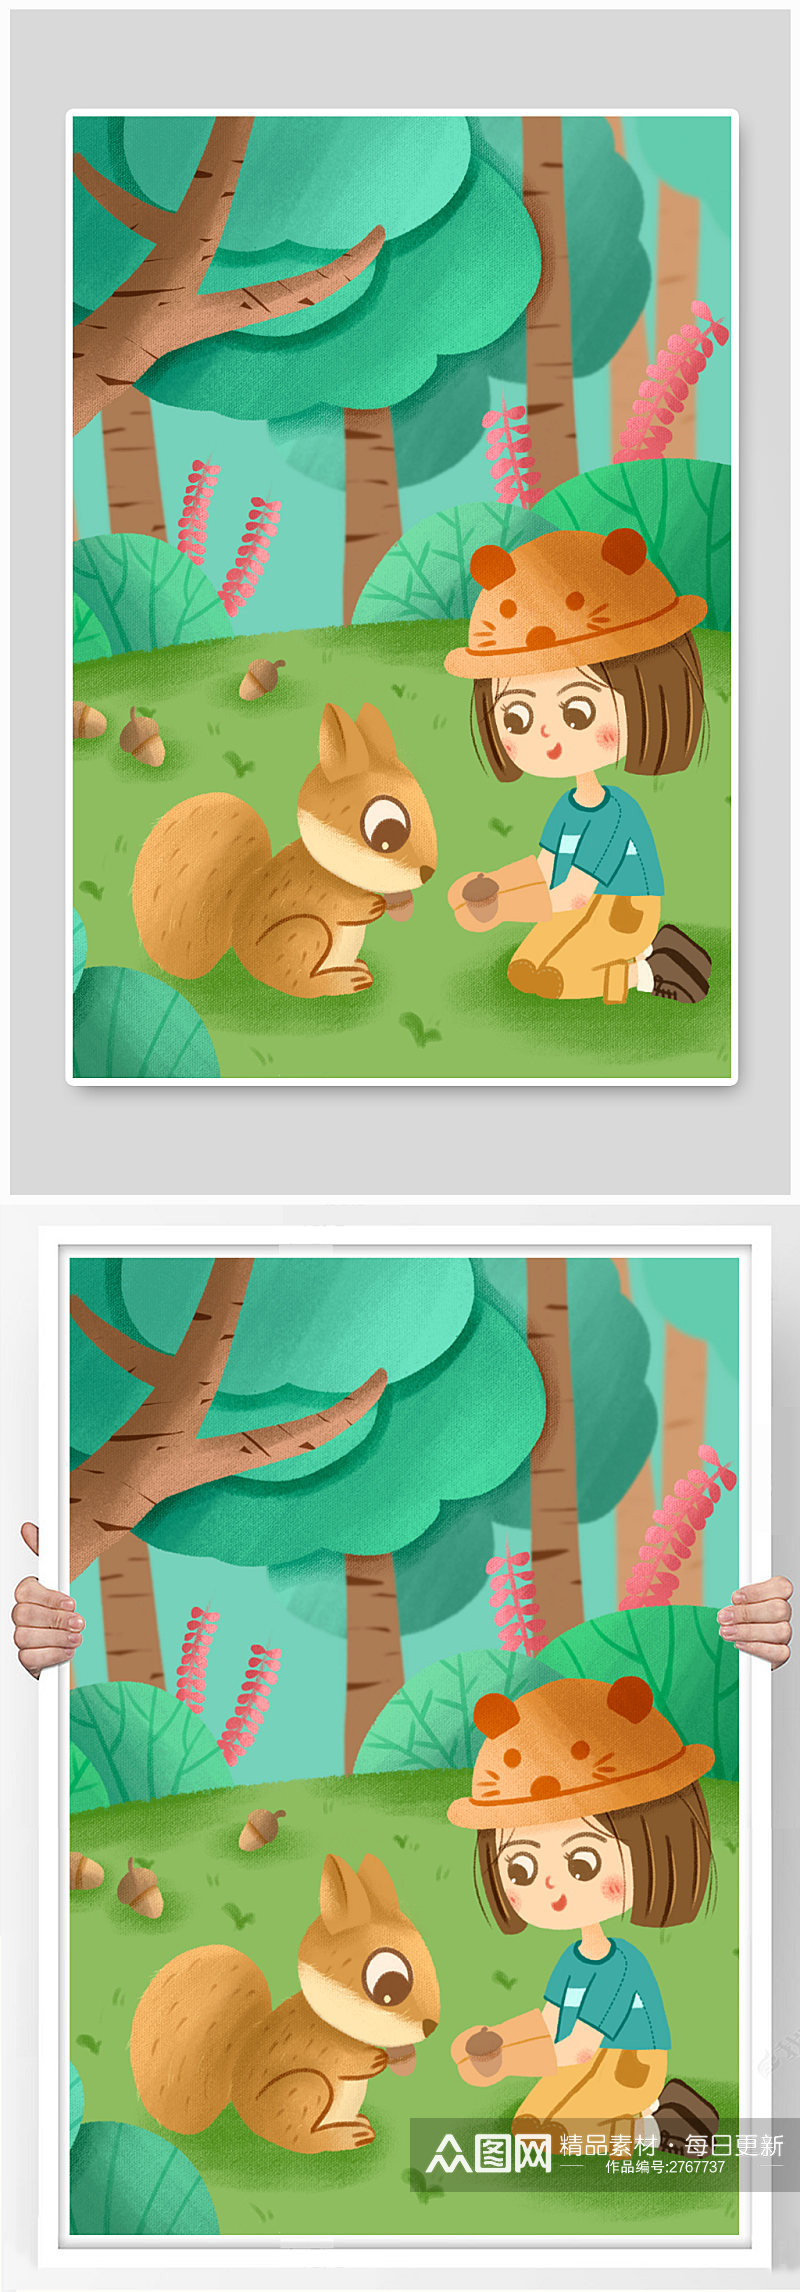 小女孩与松鼠森林治愈系插画海报素材